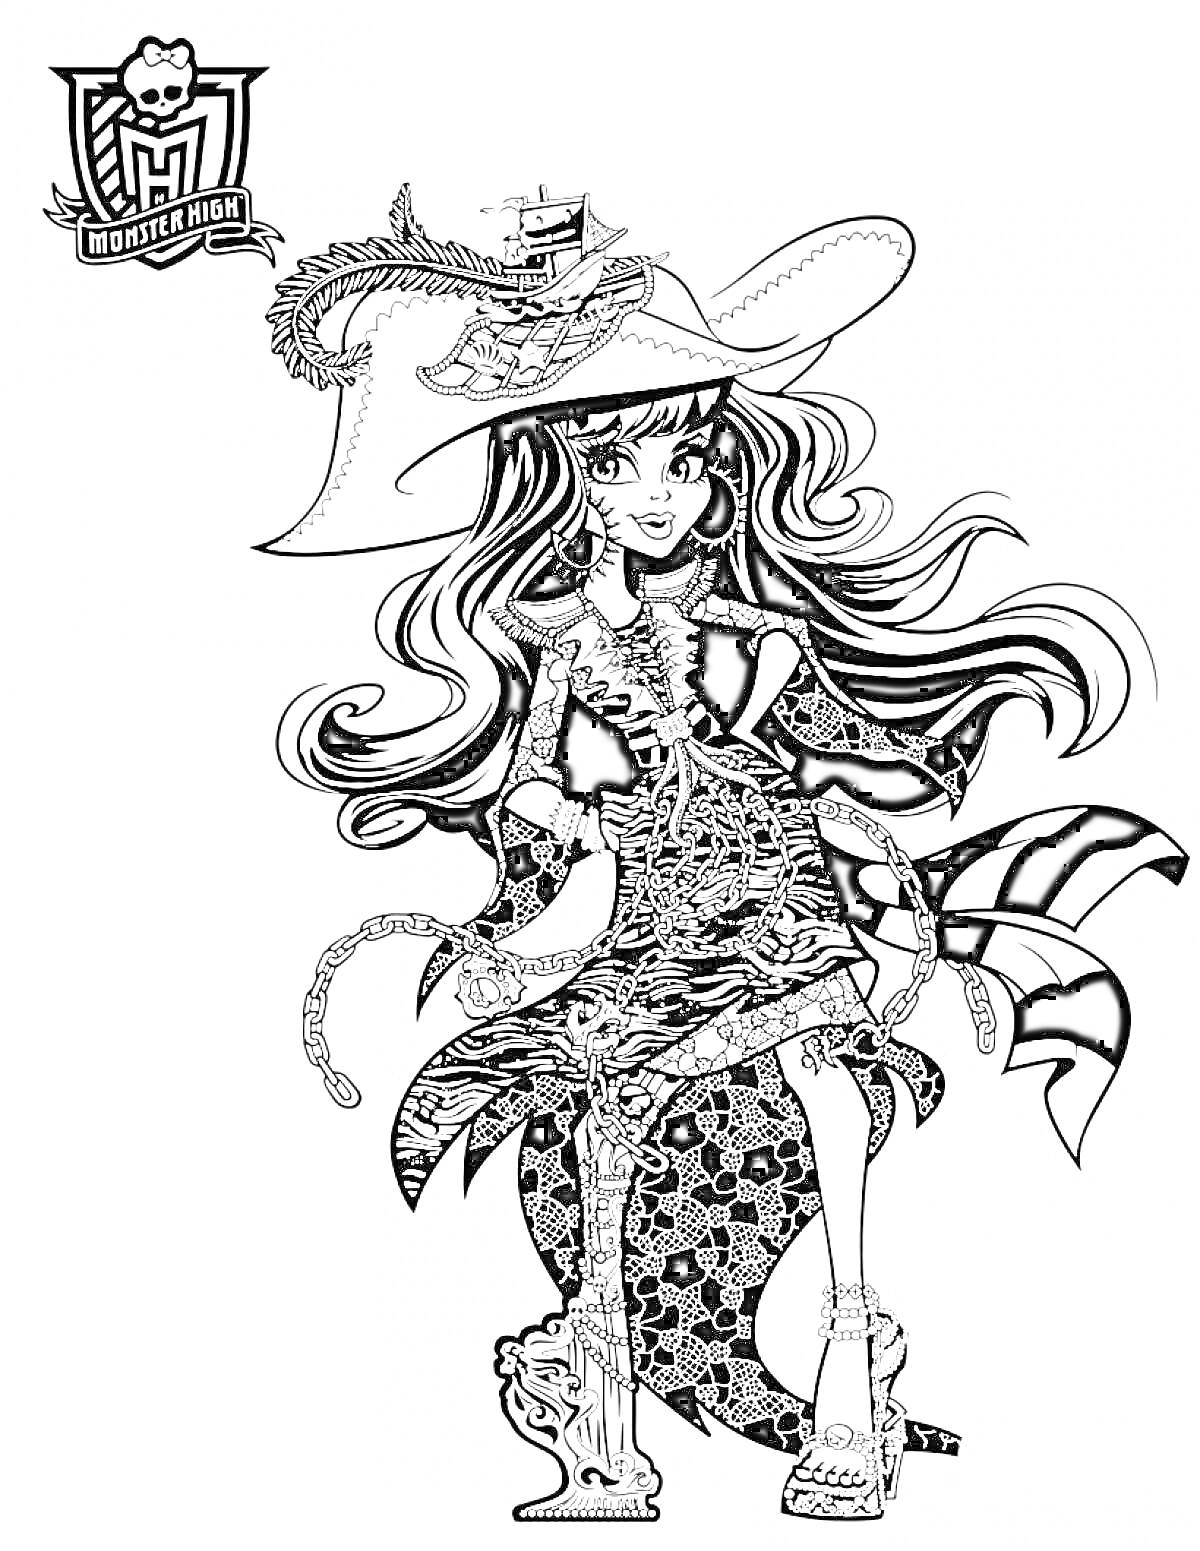 Девушка в шляпе с змейкой и длинными волосами в костюме с элементами паутины и черепа, сидящая с веслом